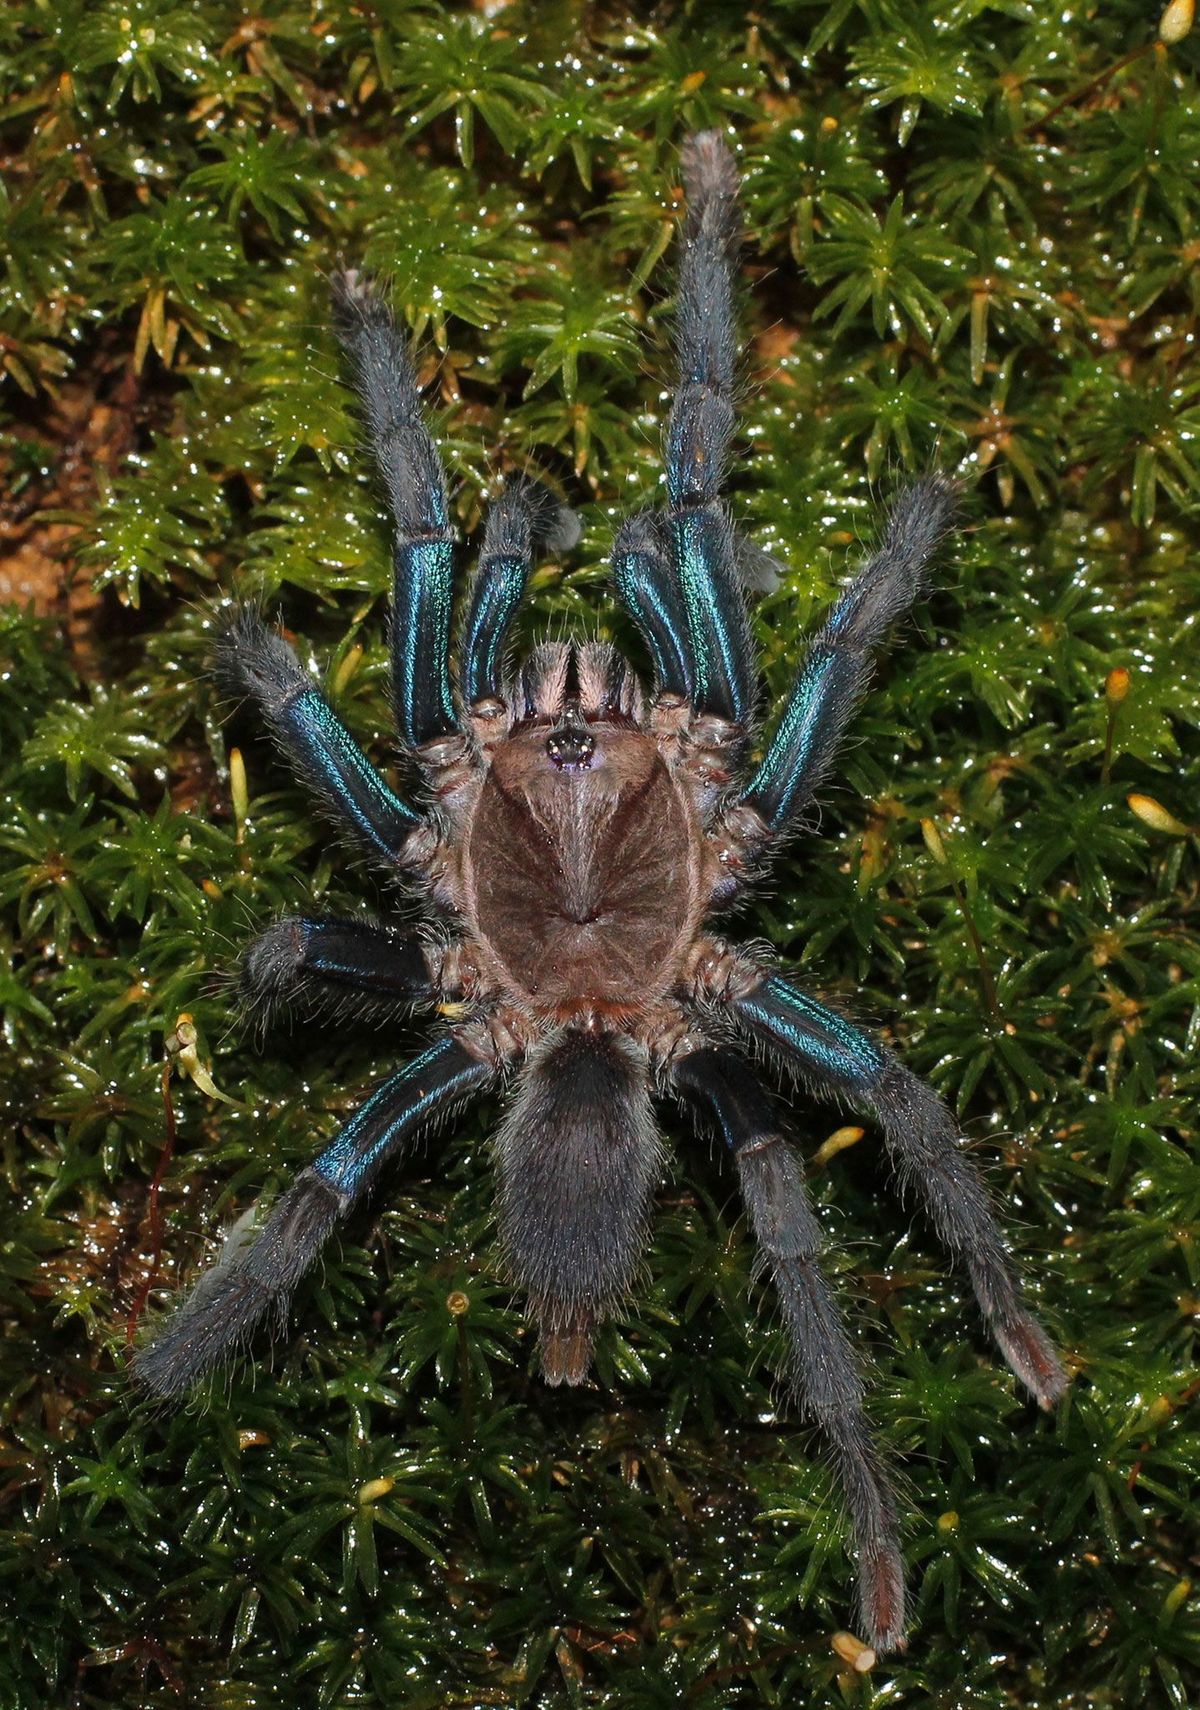 De vrouwtjes van de pas ontdekte vogelspinnensoort hebben glanzende blauwe vlekken op hun poten terwijl de mannetjes mosbruin zijn